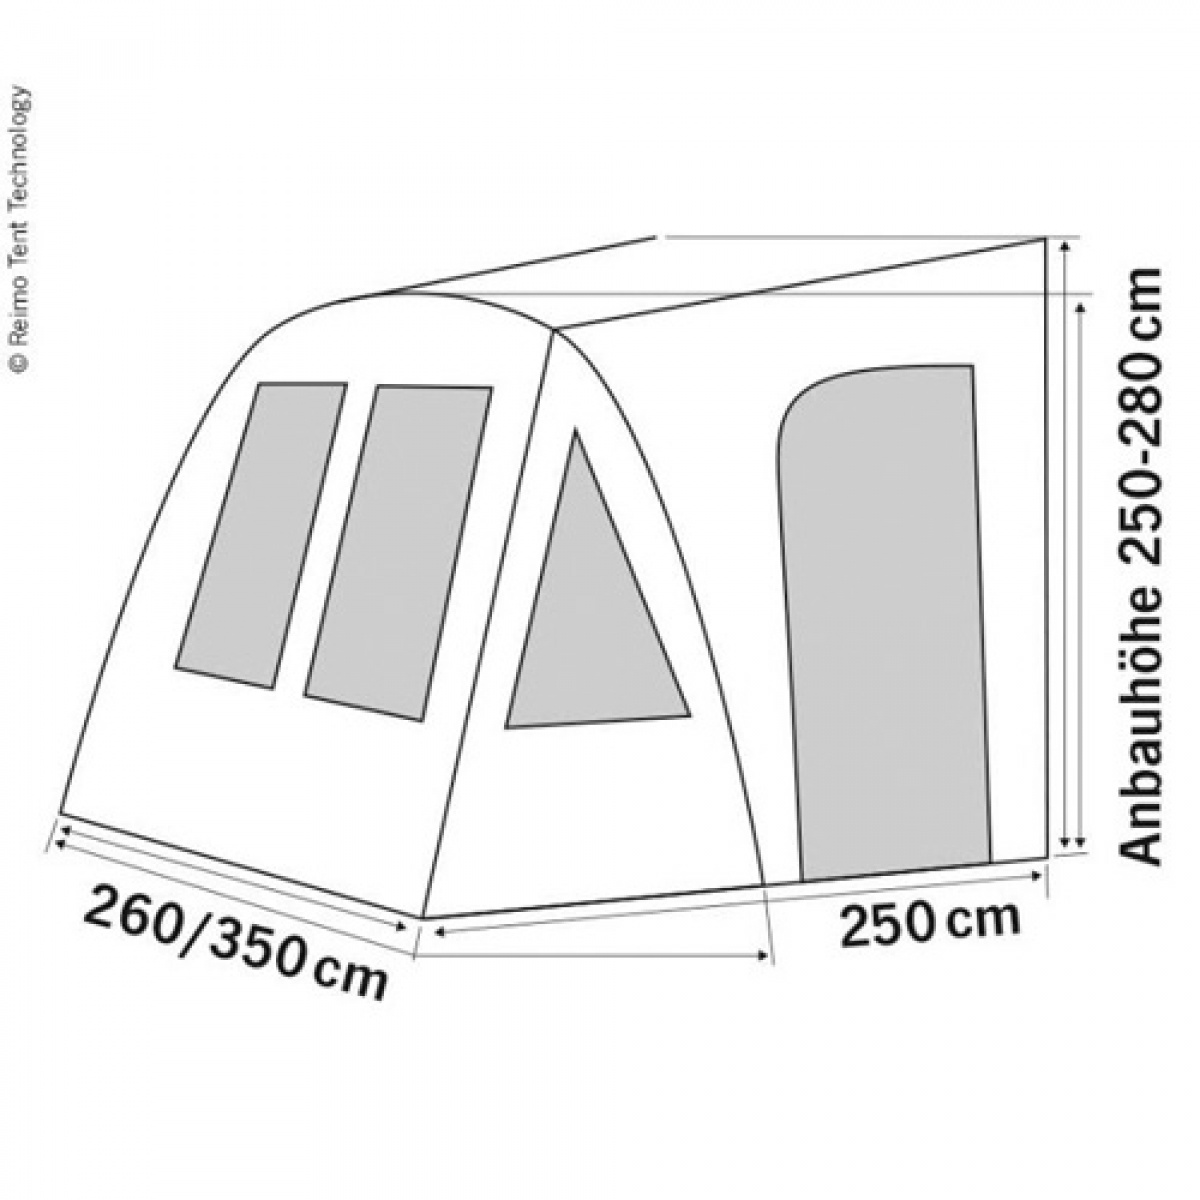 One Beam Air High Lufttelt i gruppen Fortelt & Markiser / Fortelt Autocamper / Oppustelige telte til autocampere / Reimo lufttelt hos Campmarket (70064)